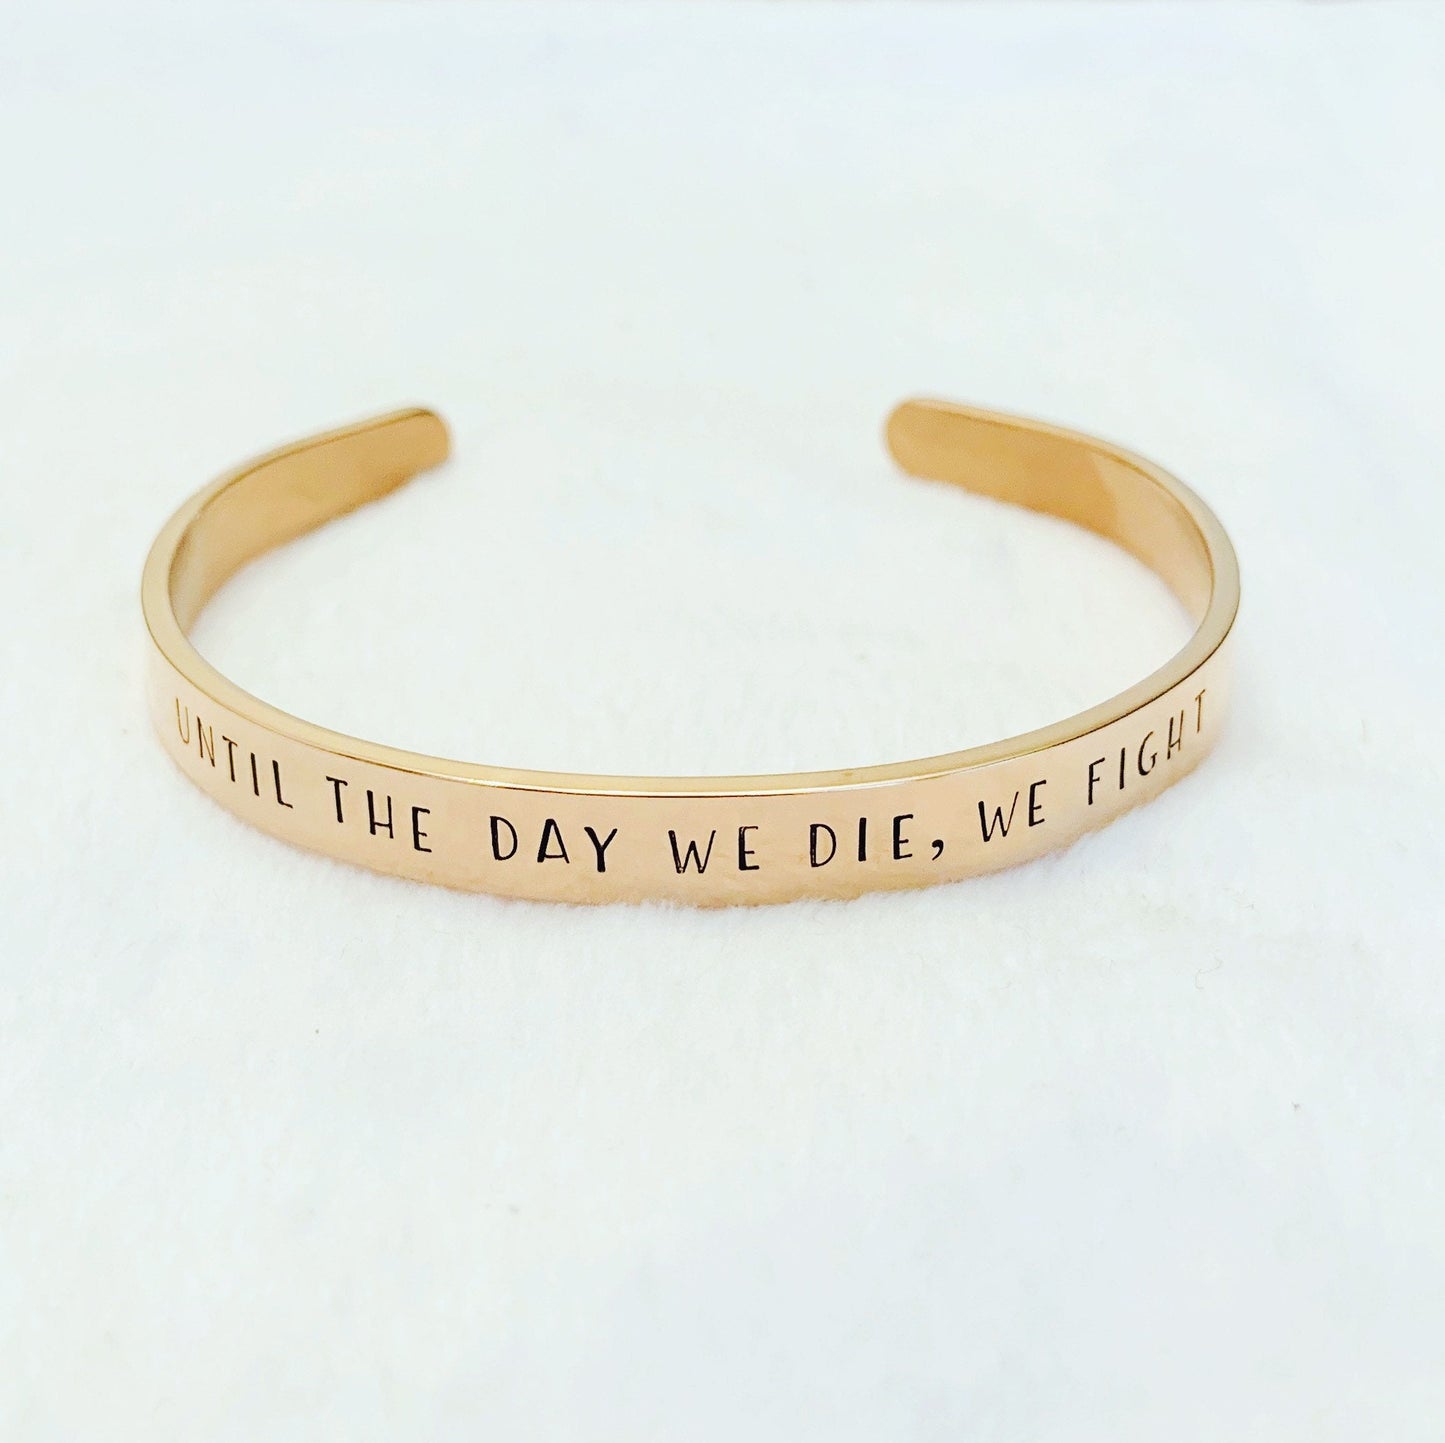 Until the day we die, we fight - Cuff Bracelet